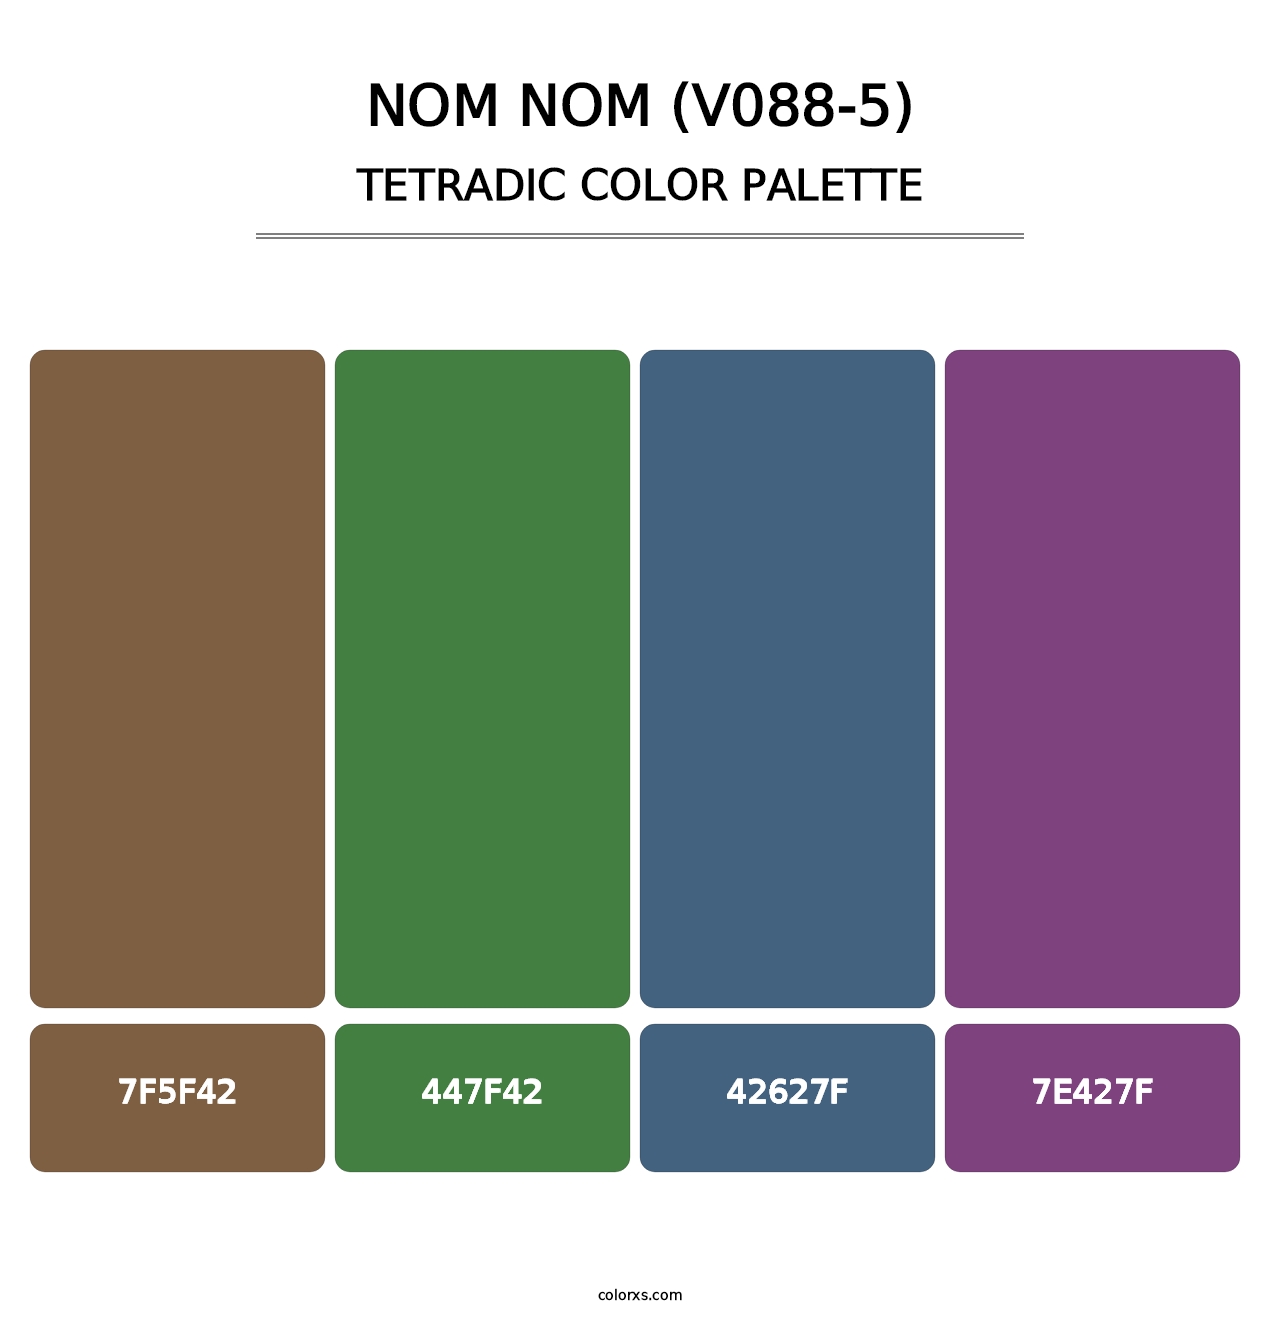 Nom Nom (V088-5) - Tetradic Color Palette